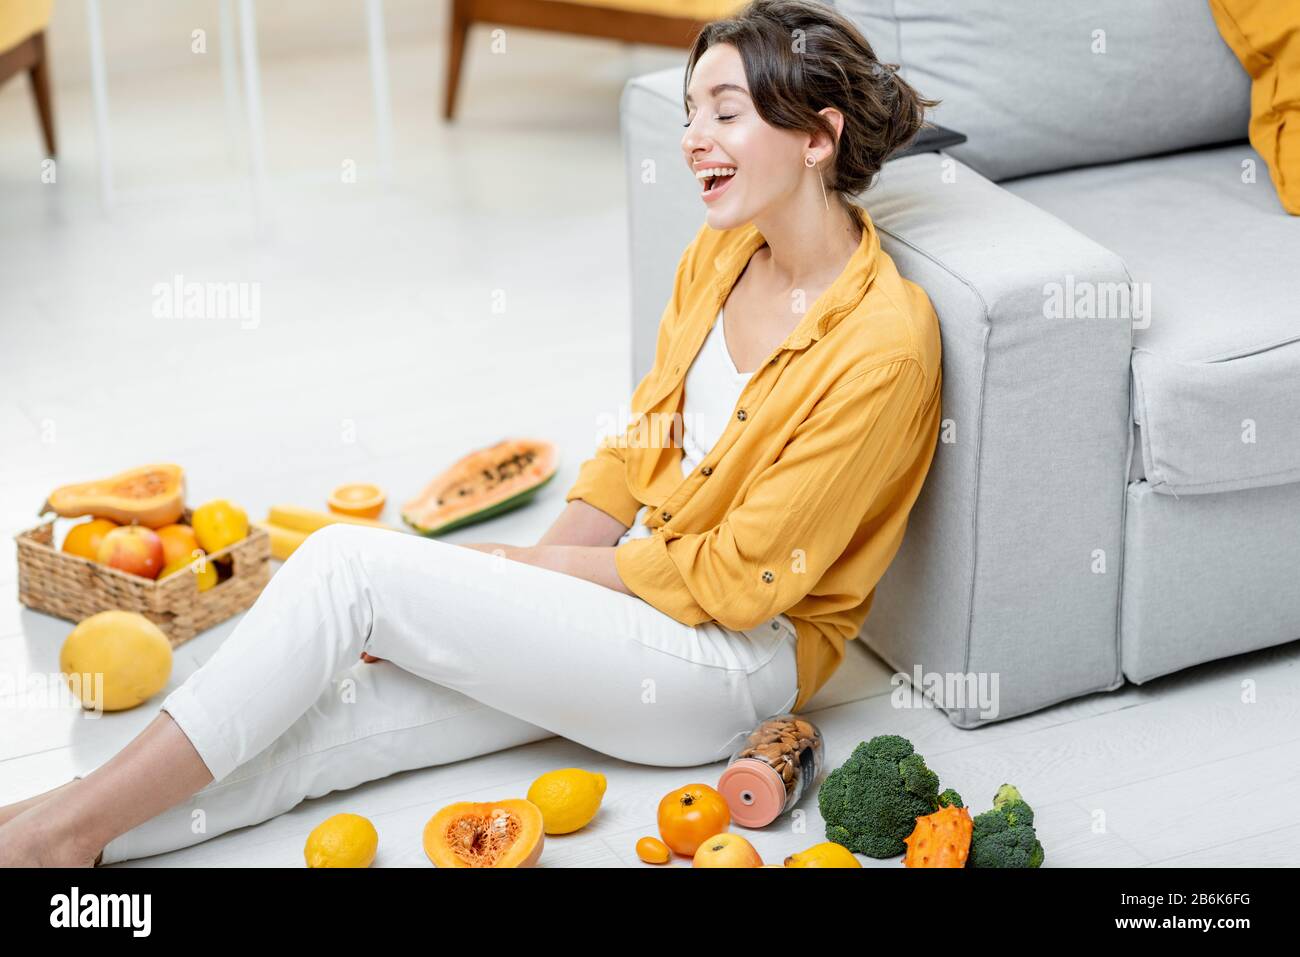 Ritratto di una giovane e allegra donna seduta con un sacco di frutta fresca e verdure sul pavimento a casa. Foto in giallo. Concetto di benessere, cibo sano e solitudine Foto Stock